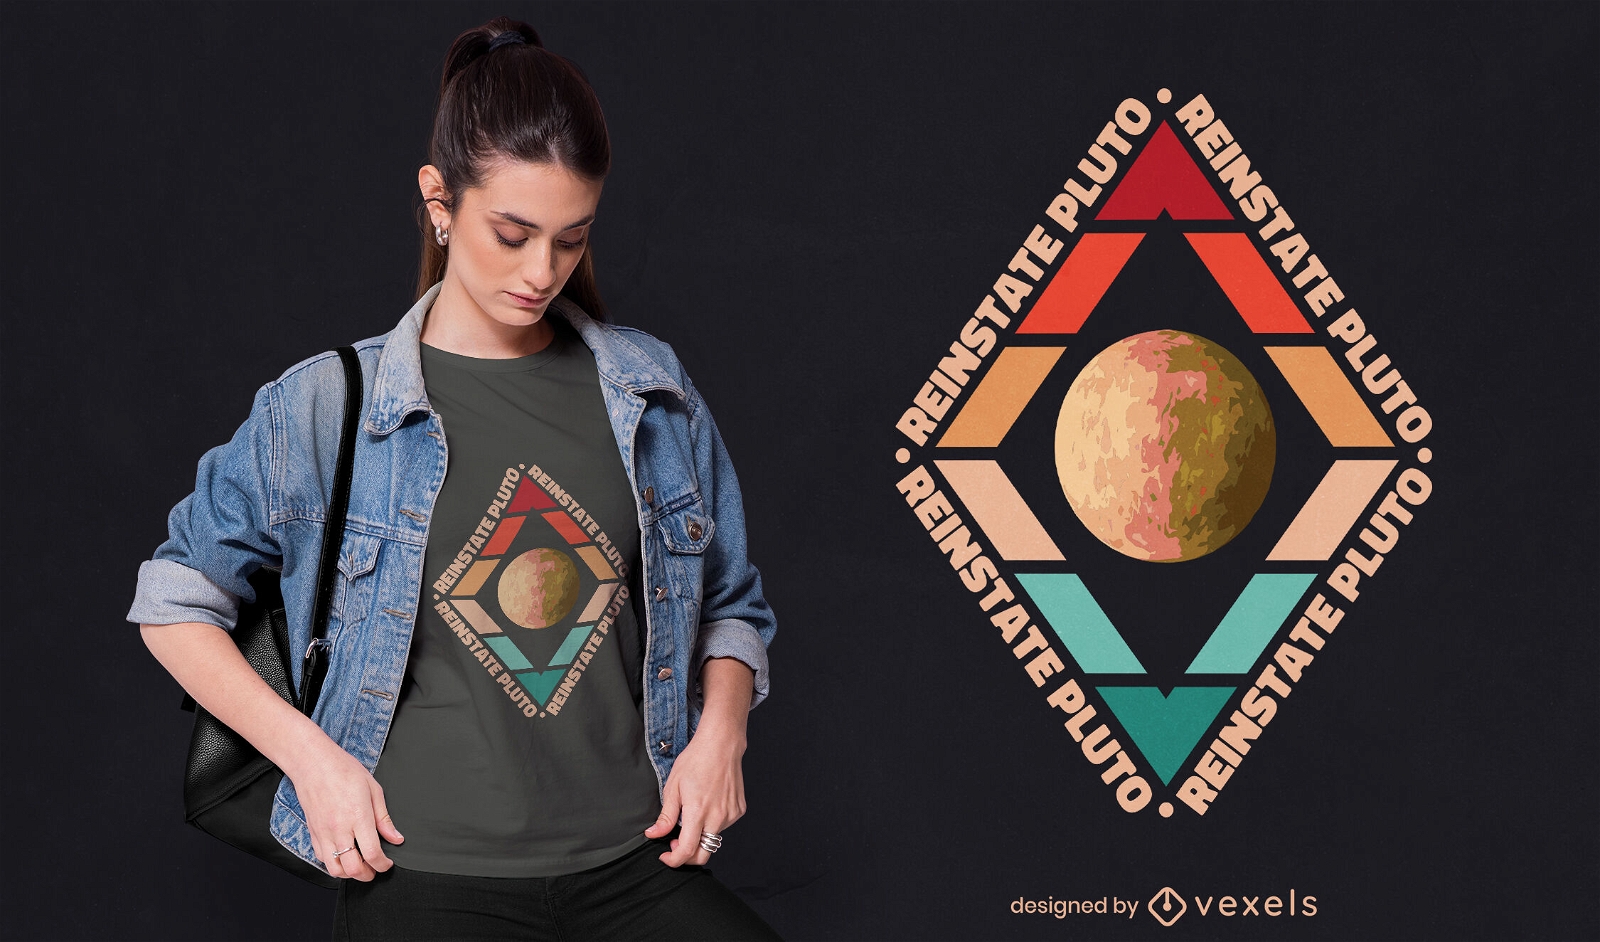 Reinstaurar el diseño de la camiseta de Plutón